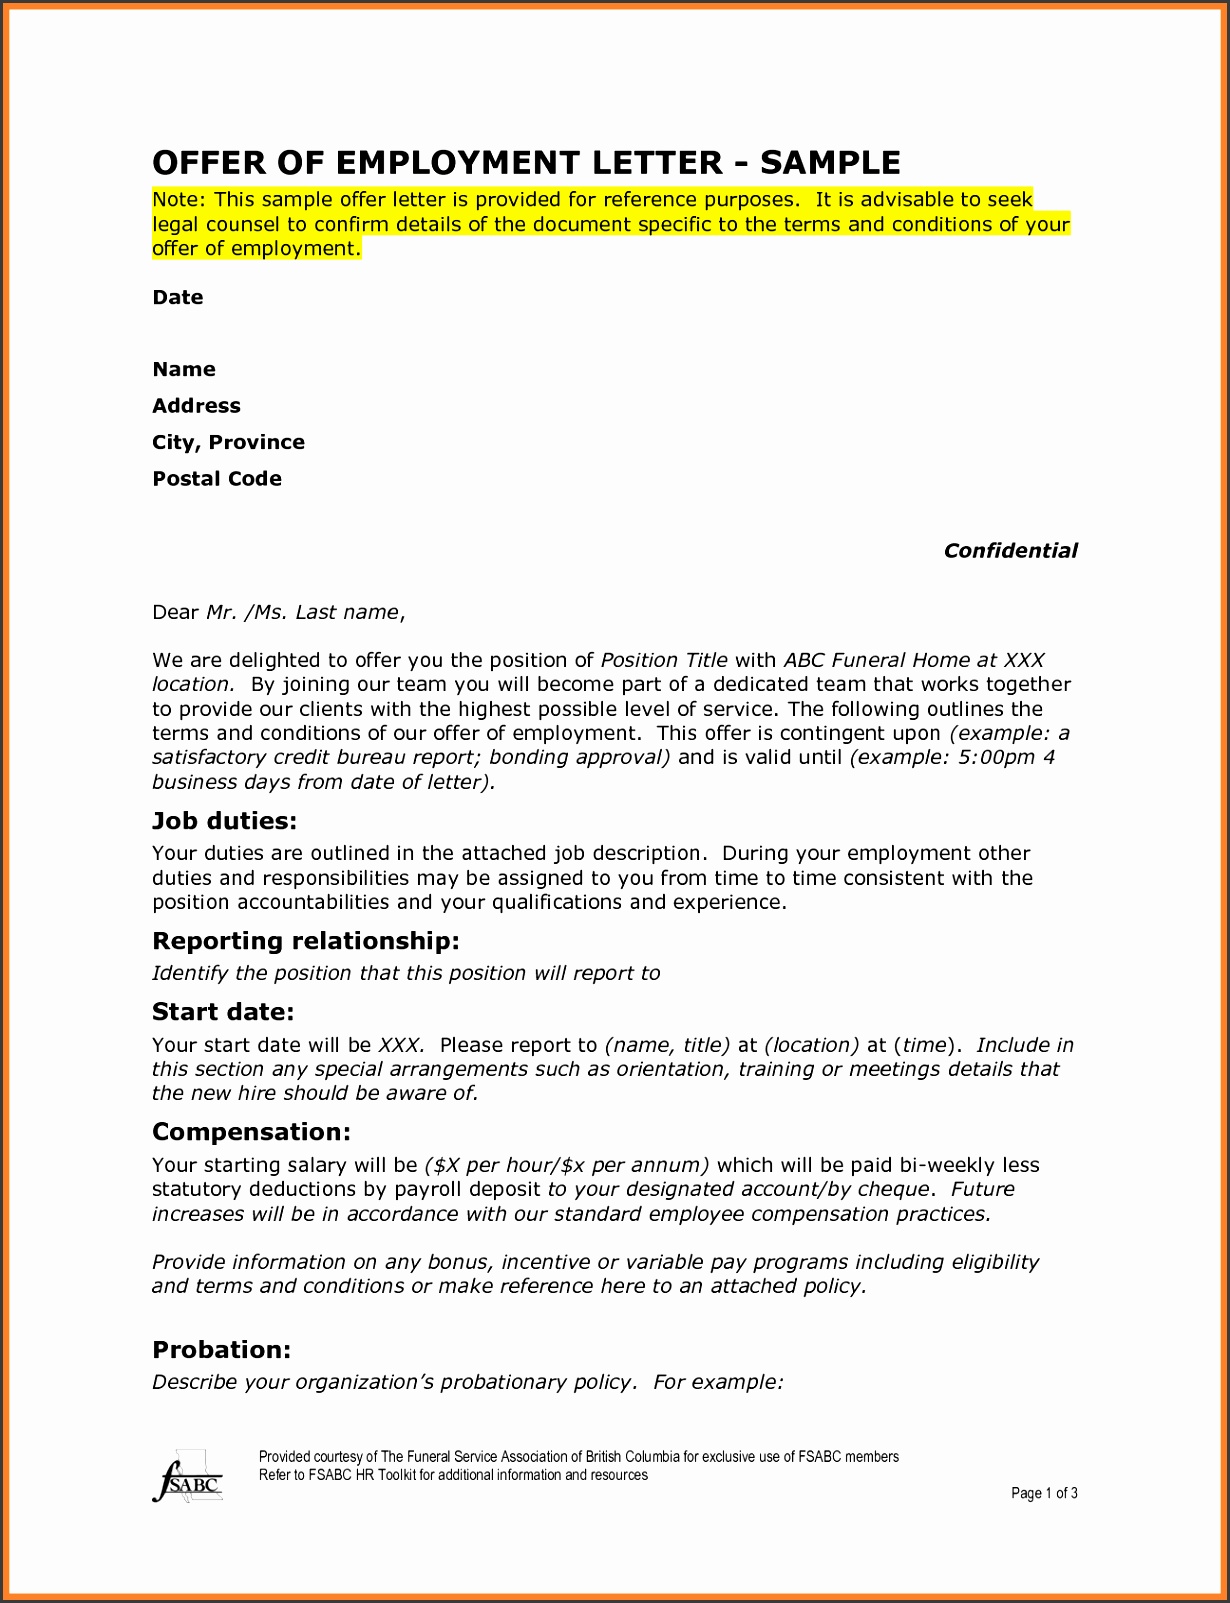 employment letter sample letter of employment szltlnzm